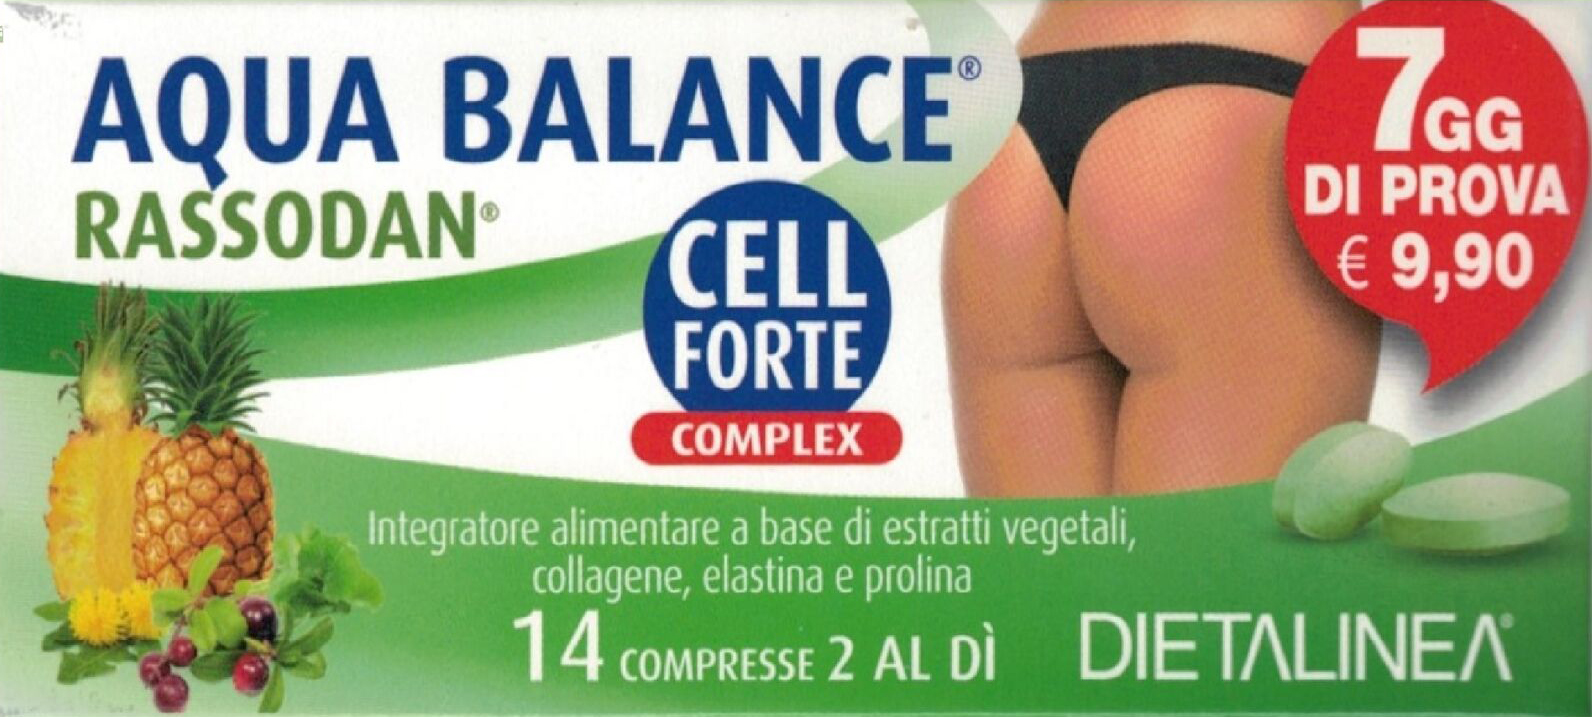 Dietalinea Aqua Balance Rassodan Cell Forte Integratore Alimentare 7 Giorni 14 Compresse